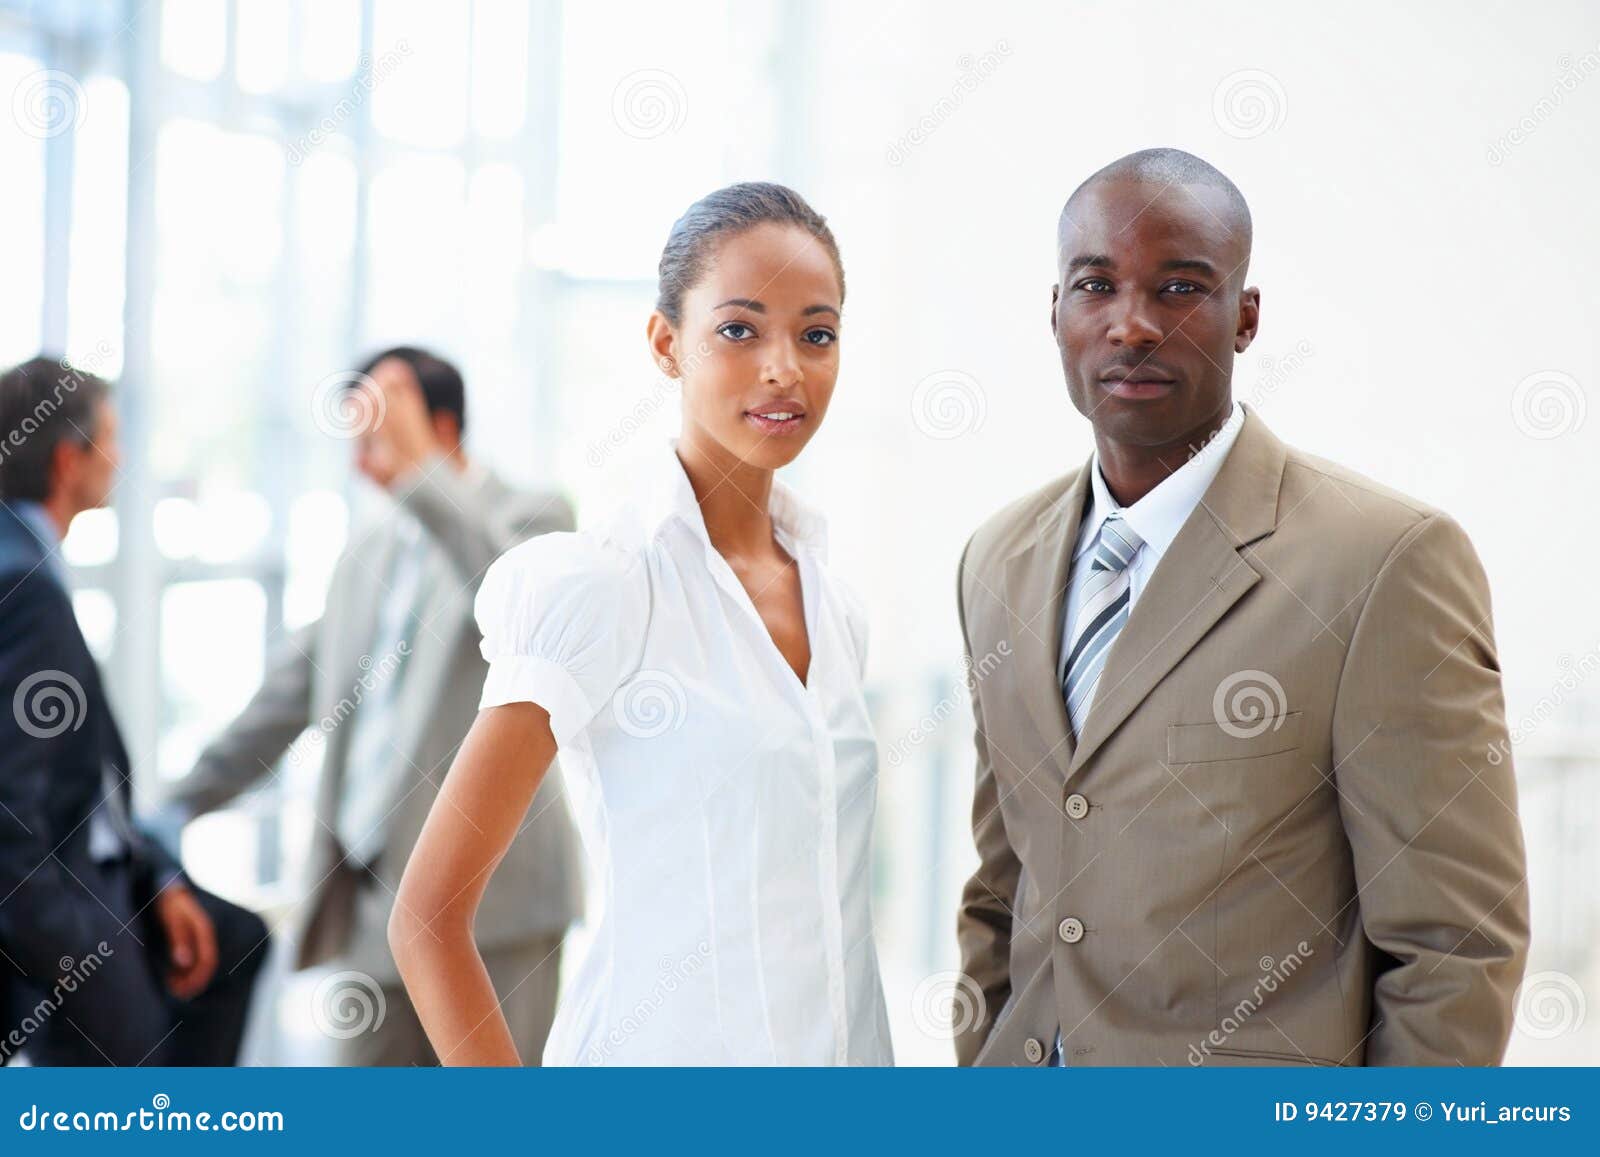 Ritratto dei colleghi professionali di affari che si levano in piedi insieme nell'ufficio